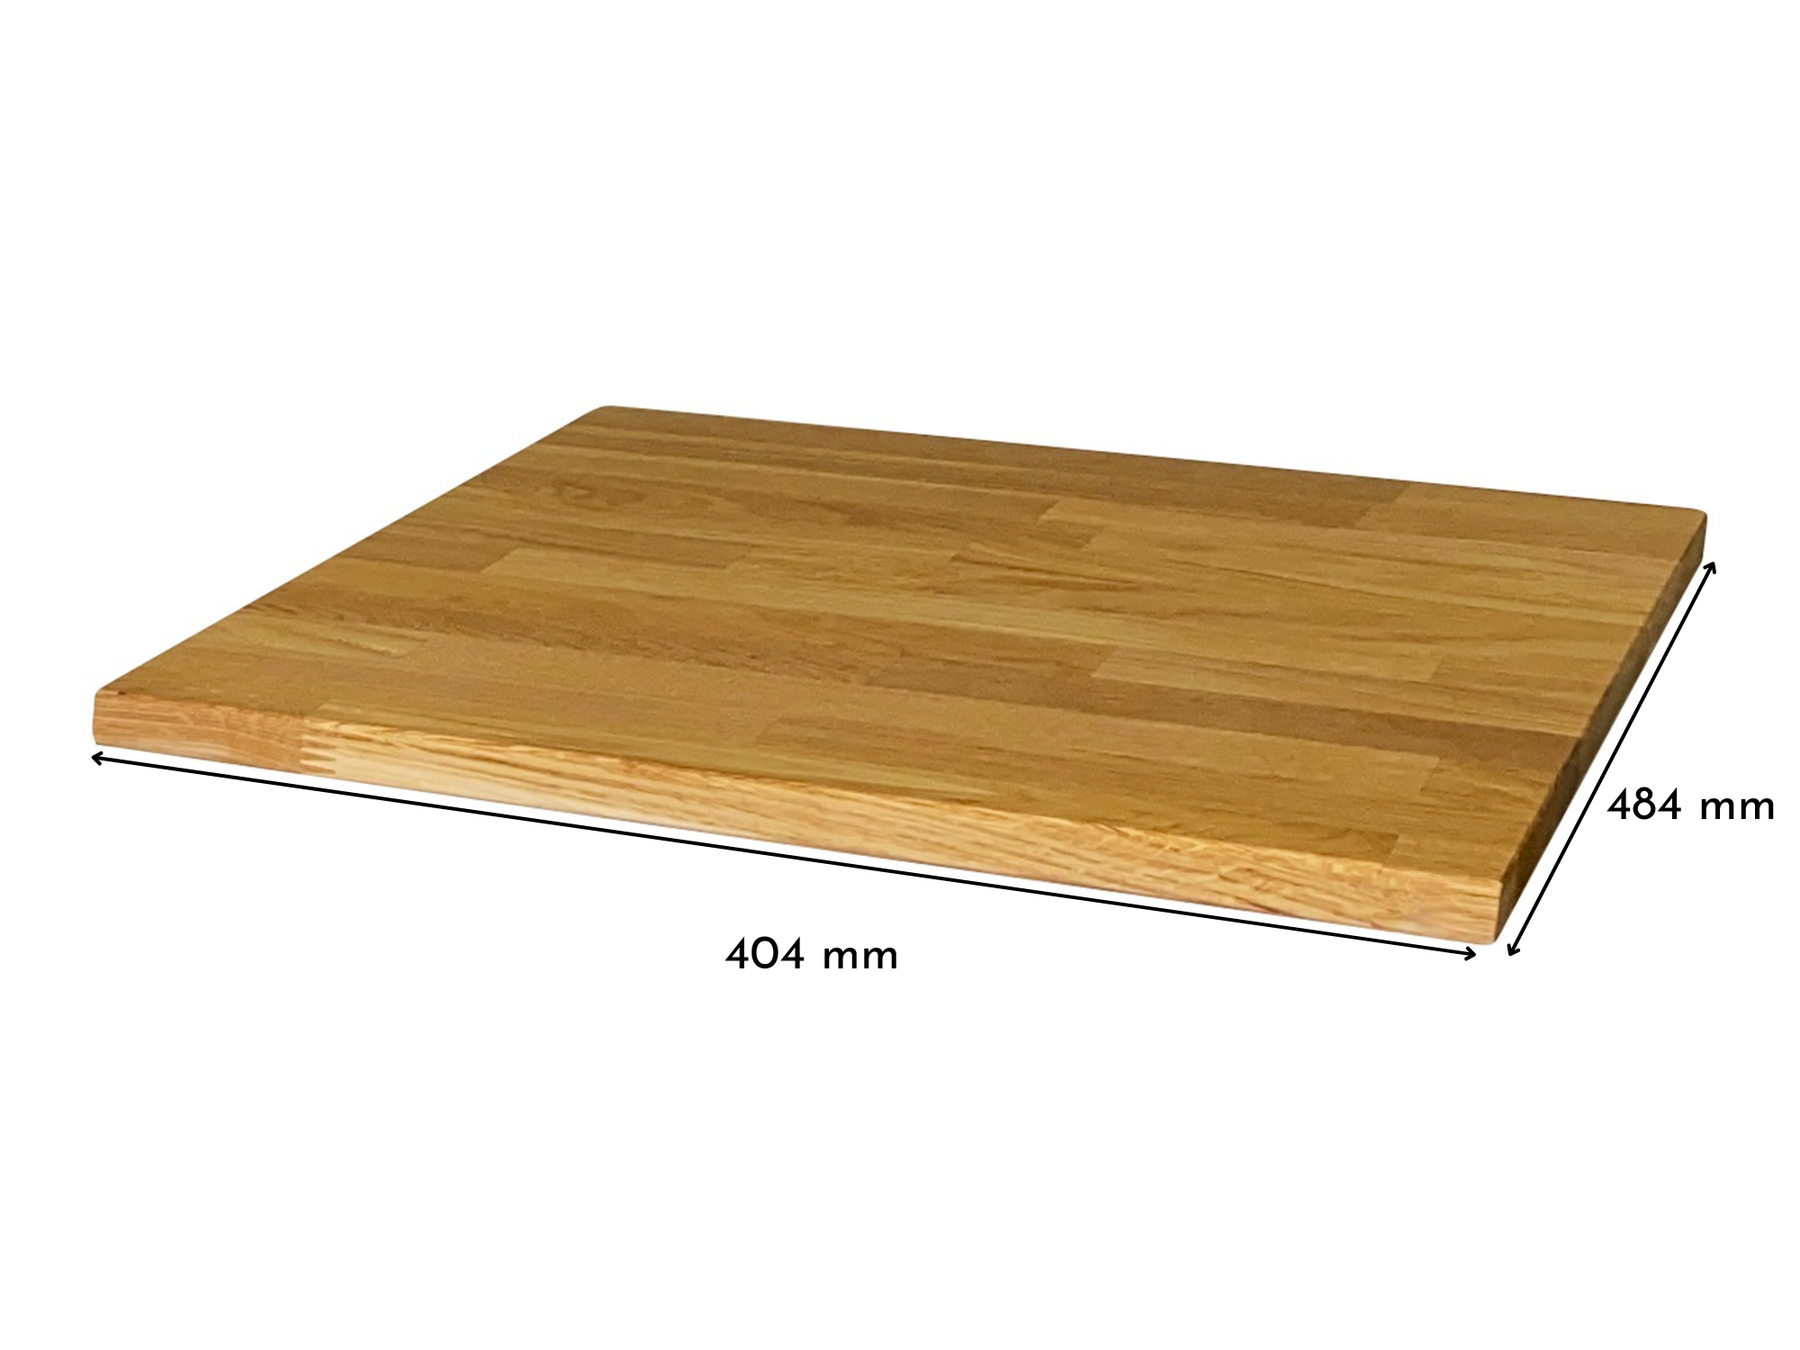 Malm Nachttisch mit Massivholzdeckplatte in Eiche Natur geölt in 19 mm Stärke mit Bemaßung 404 mm x 484 mm